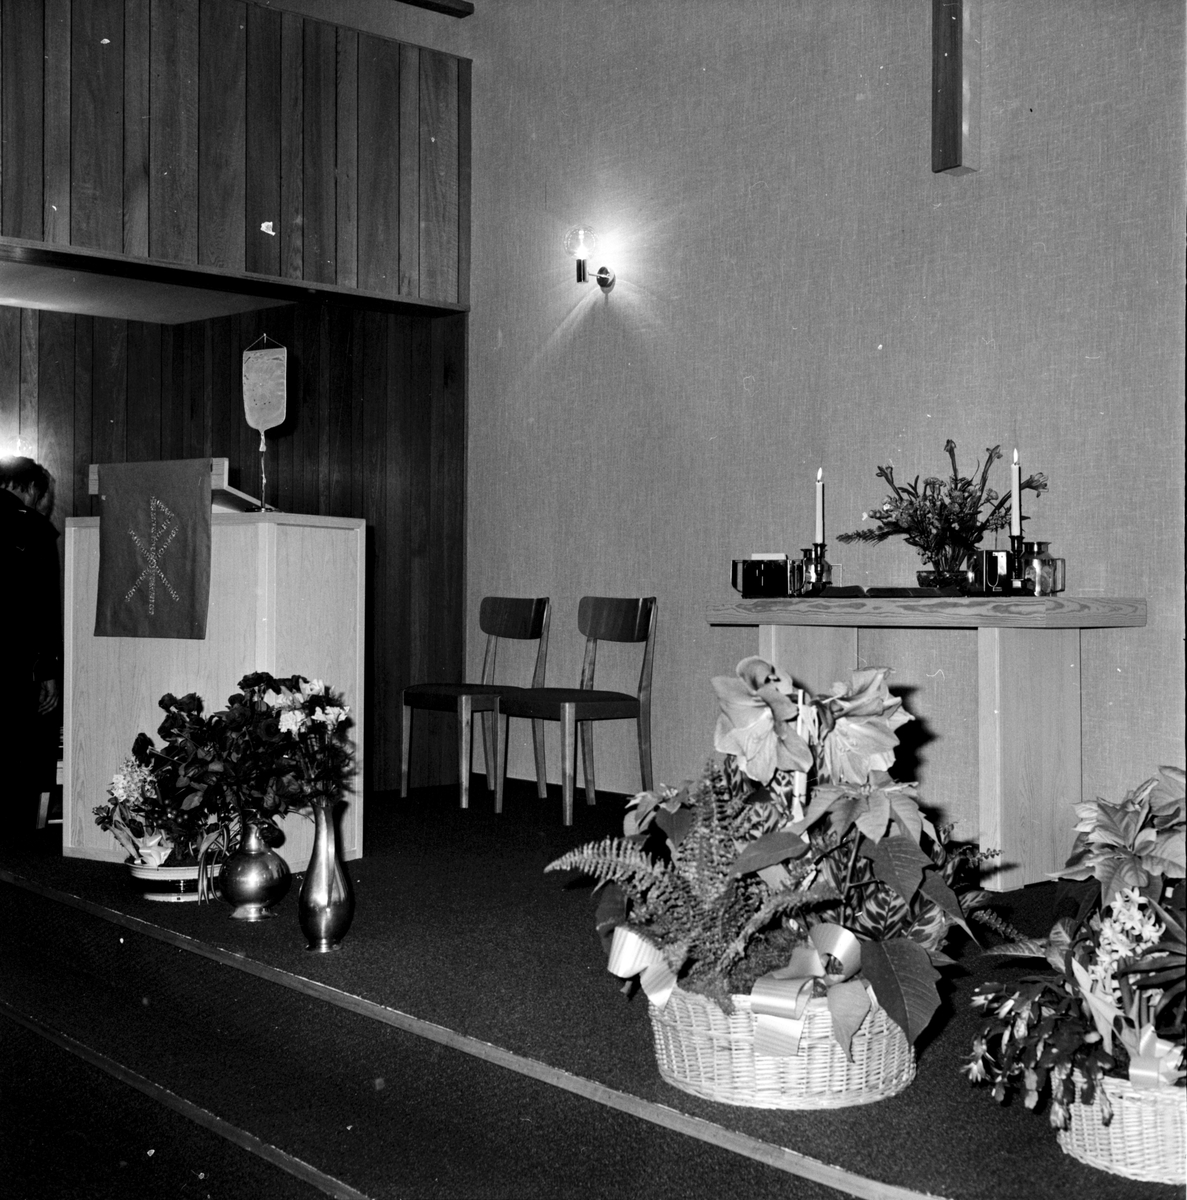 Arbrå,
Baptistkyrkan,
Invigning,
December 1971